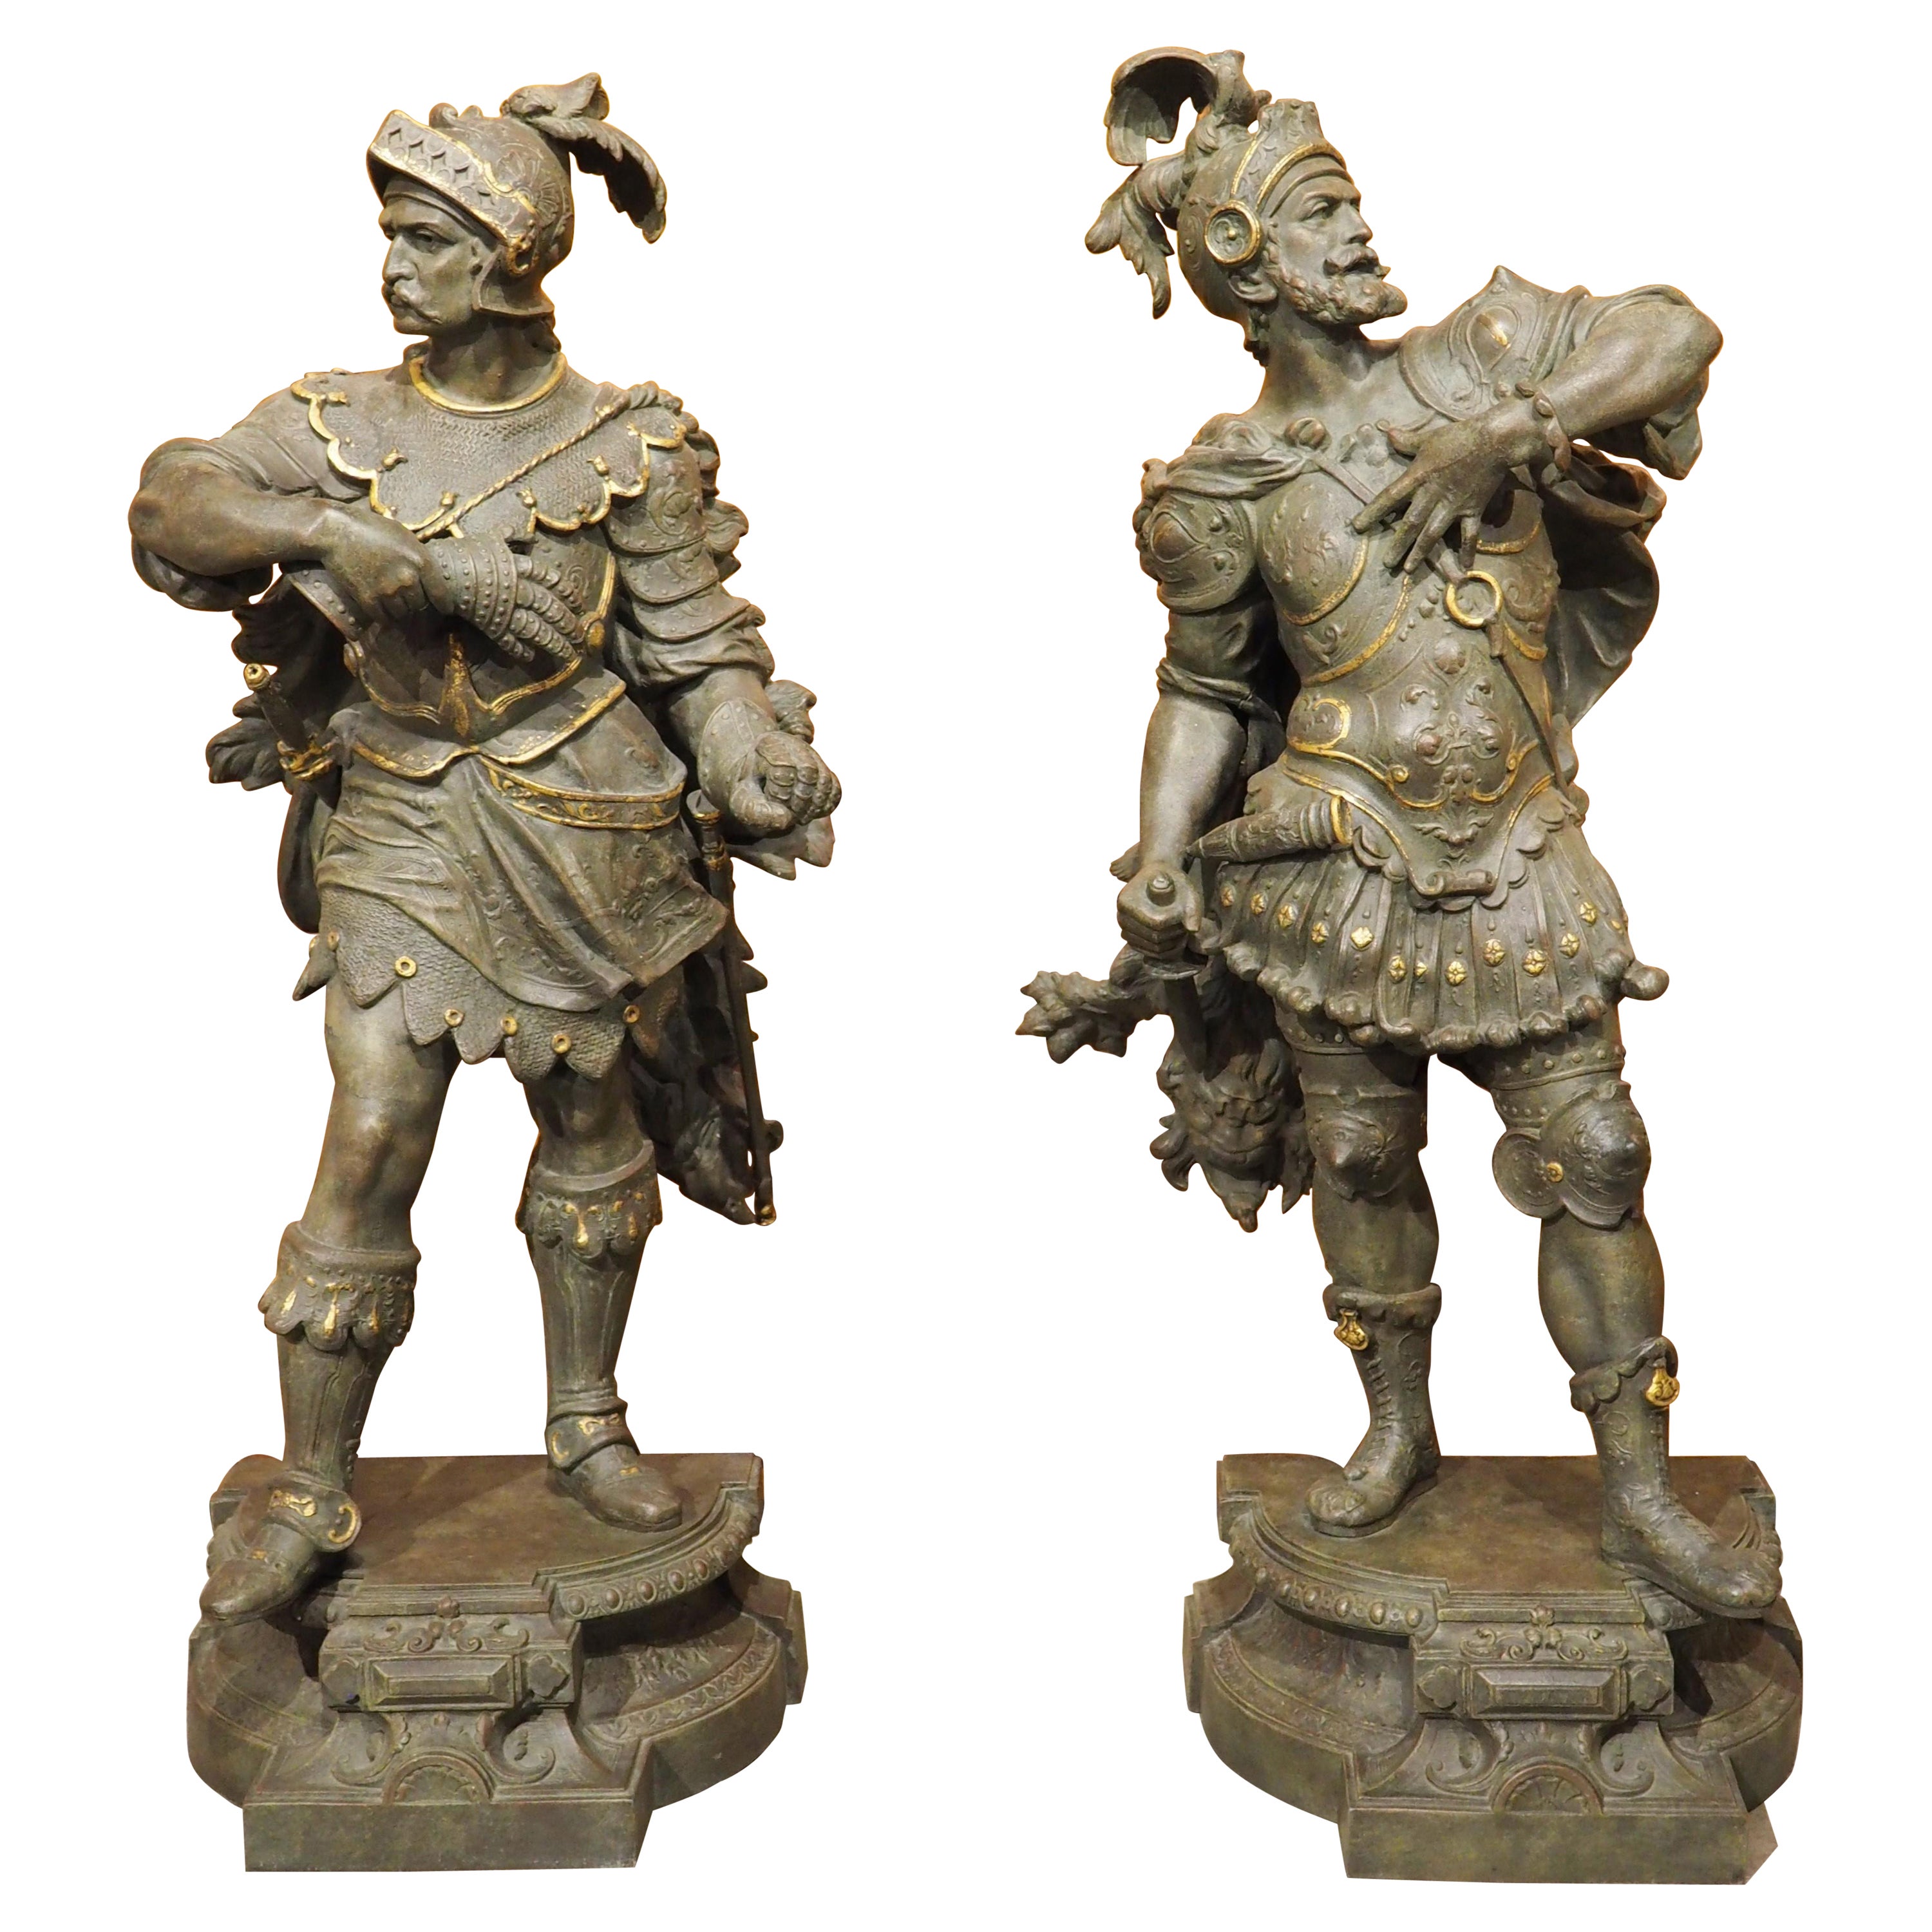 Ein Paar detailreich gegossene antike Militärfiguren aus Guss mit vergoldeten Akzenten